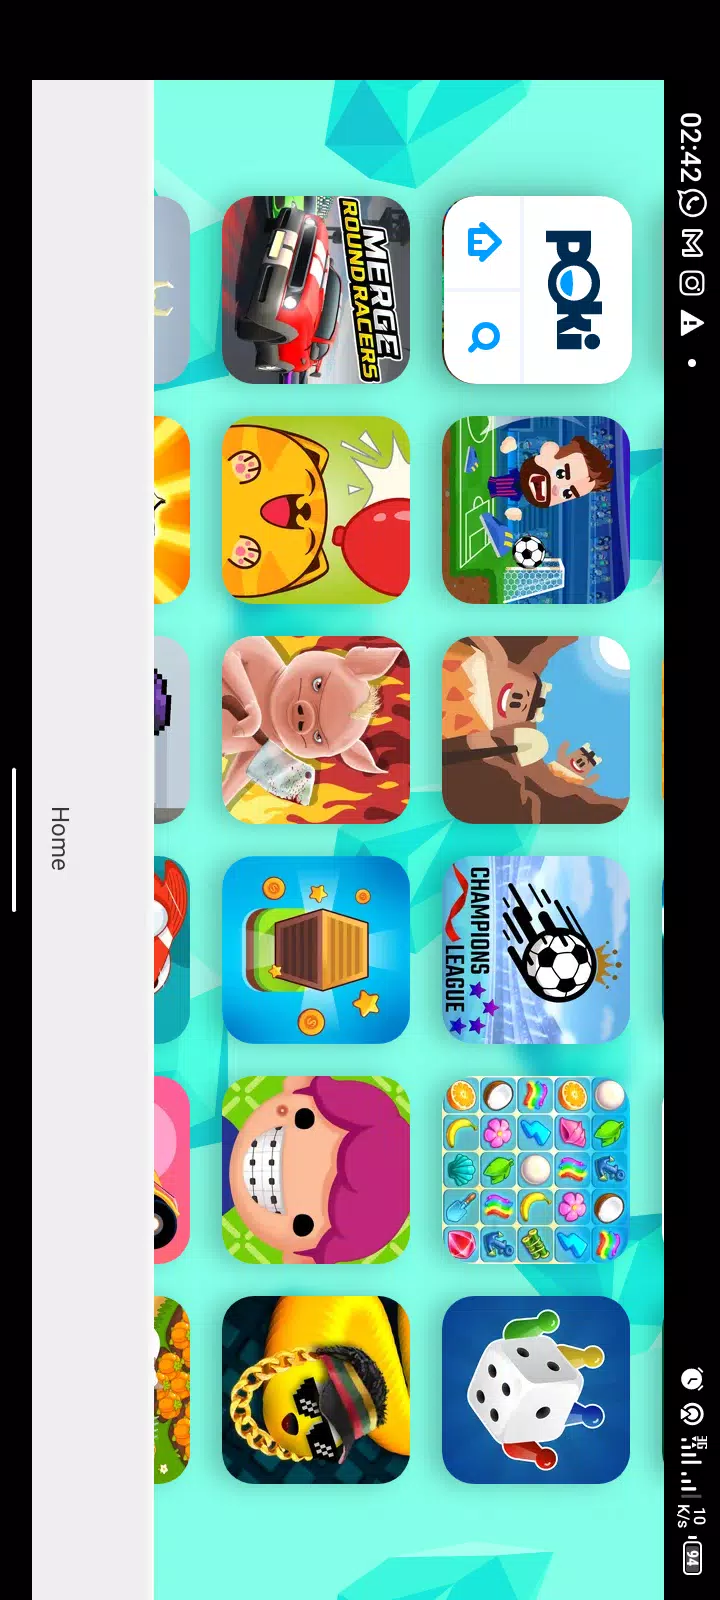 Poki Games Online APK (Android Game) - Ücretsi̇z İndi̇ri̇n